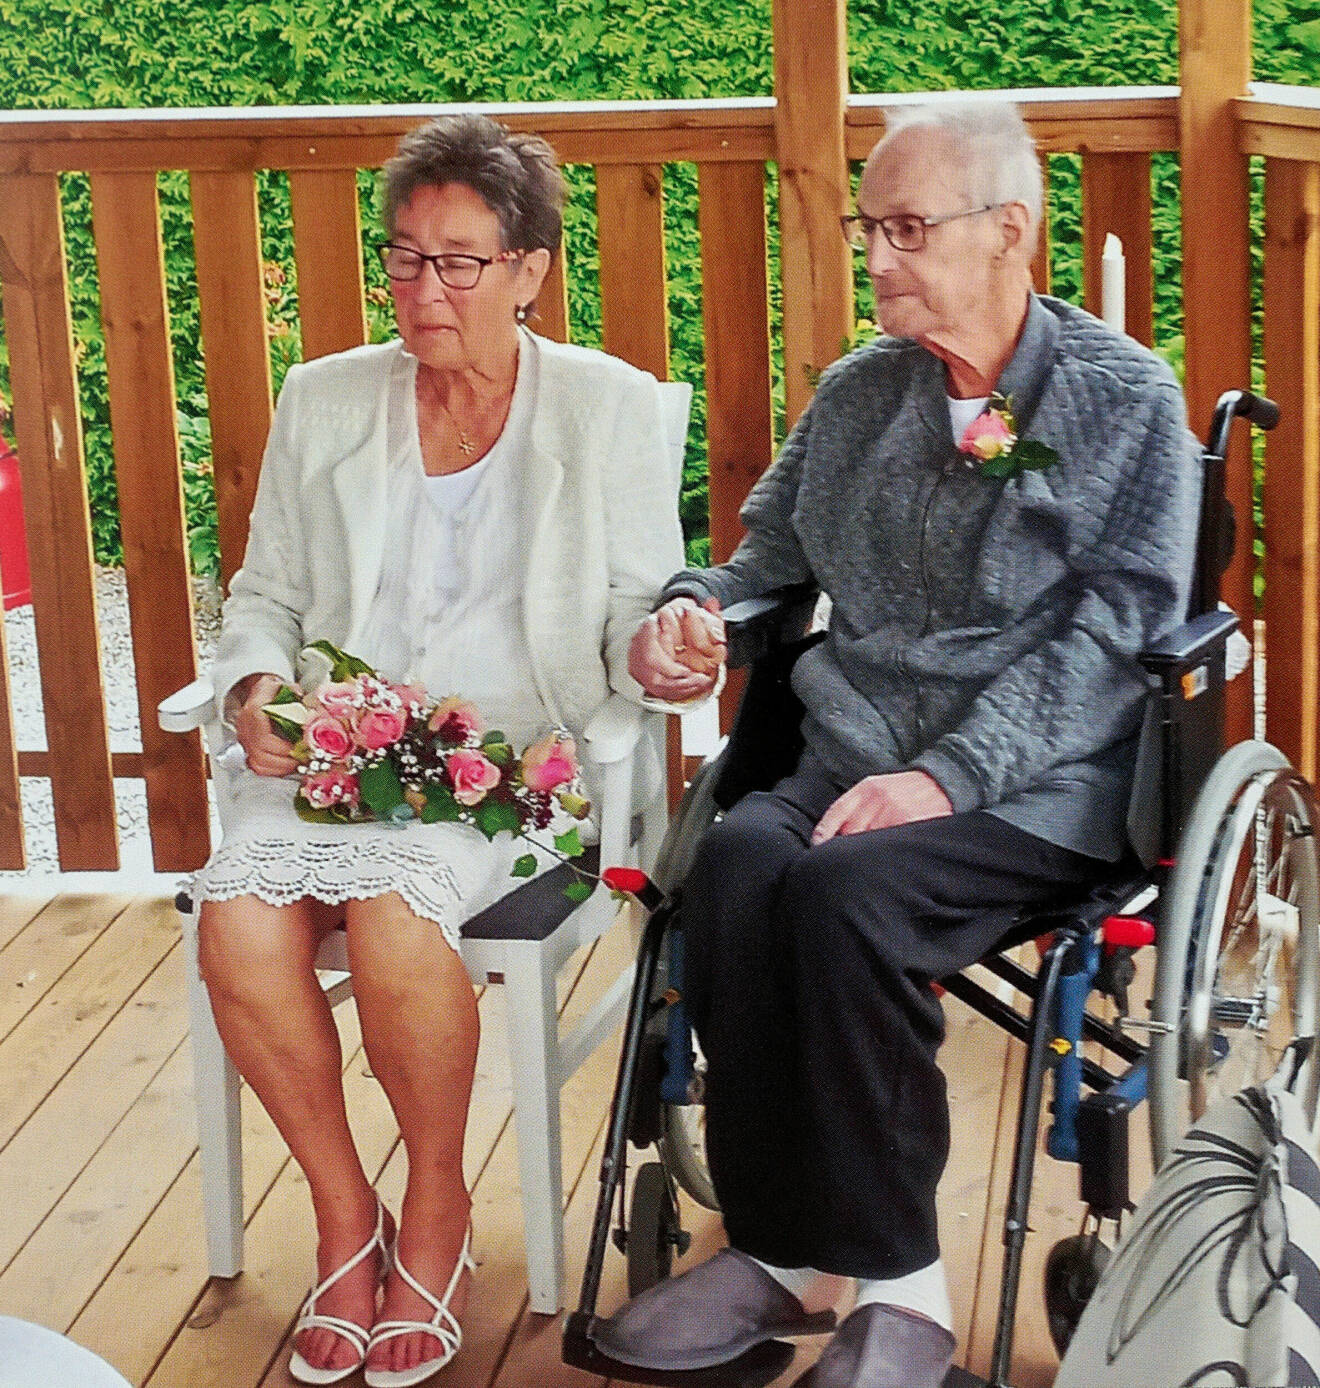 Birgitta och Bengt gifter sig. Birgitta sitter ner och är vitklädd med en bukett i famnen. Bengt sitter i en rullstol.